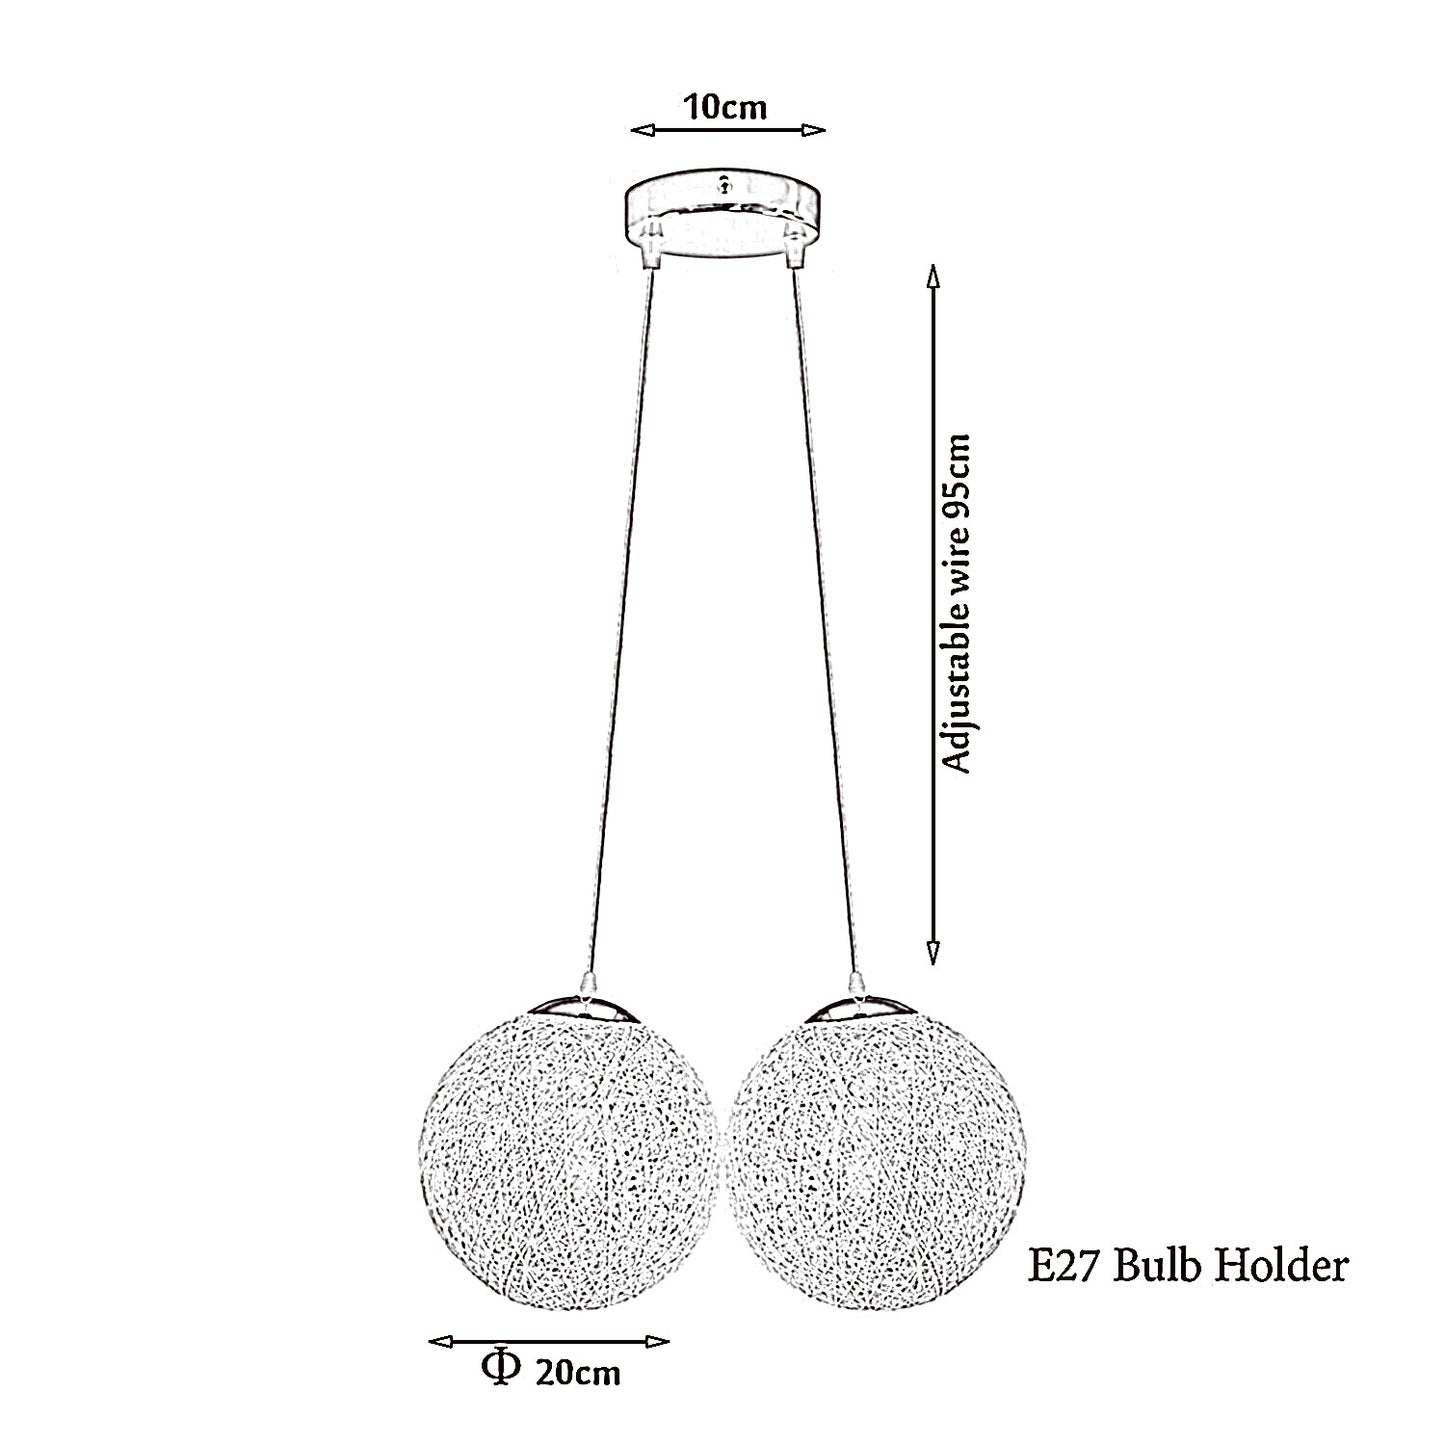 Schwarz Rattan Wicker Woven Ball Globe 2 Outlet Moderne Pendelleuchte Hängende Deckenleuchte